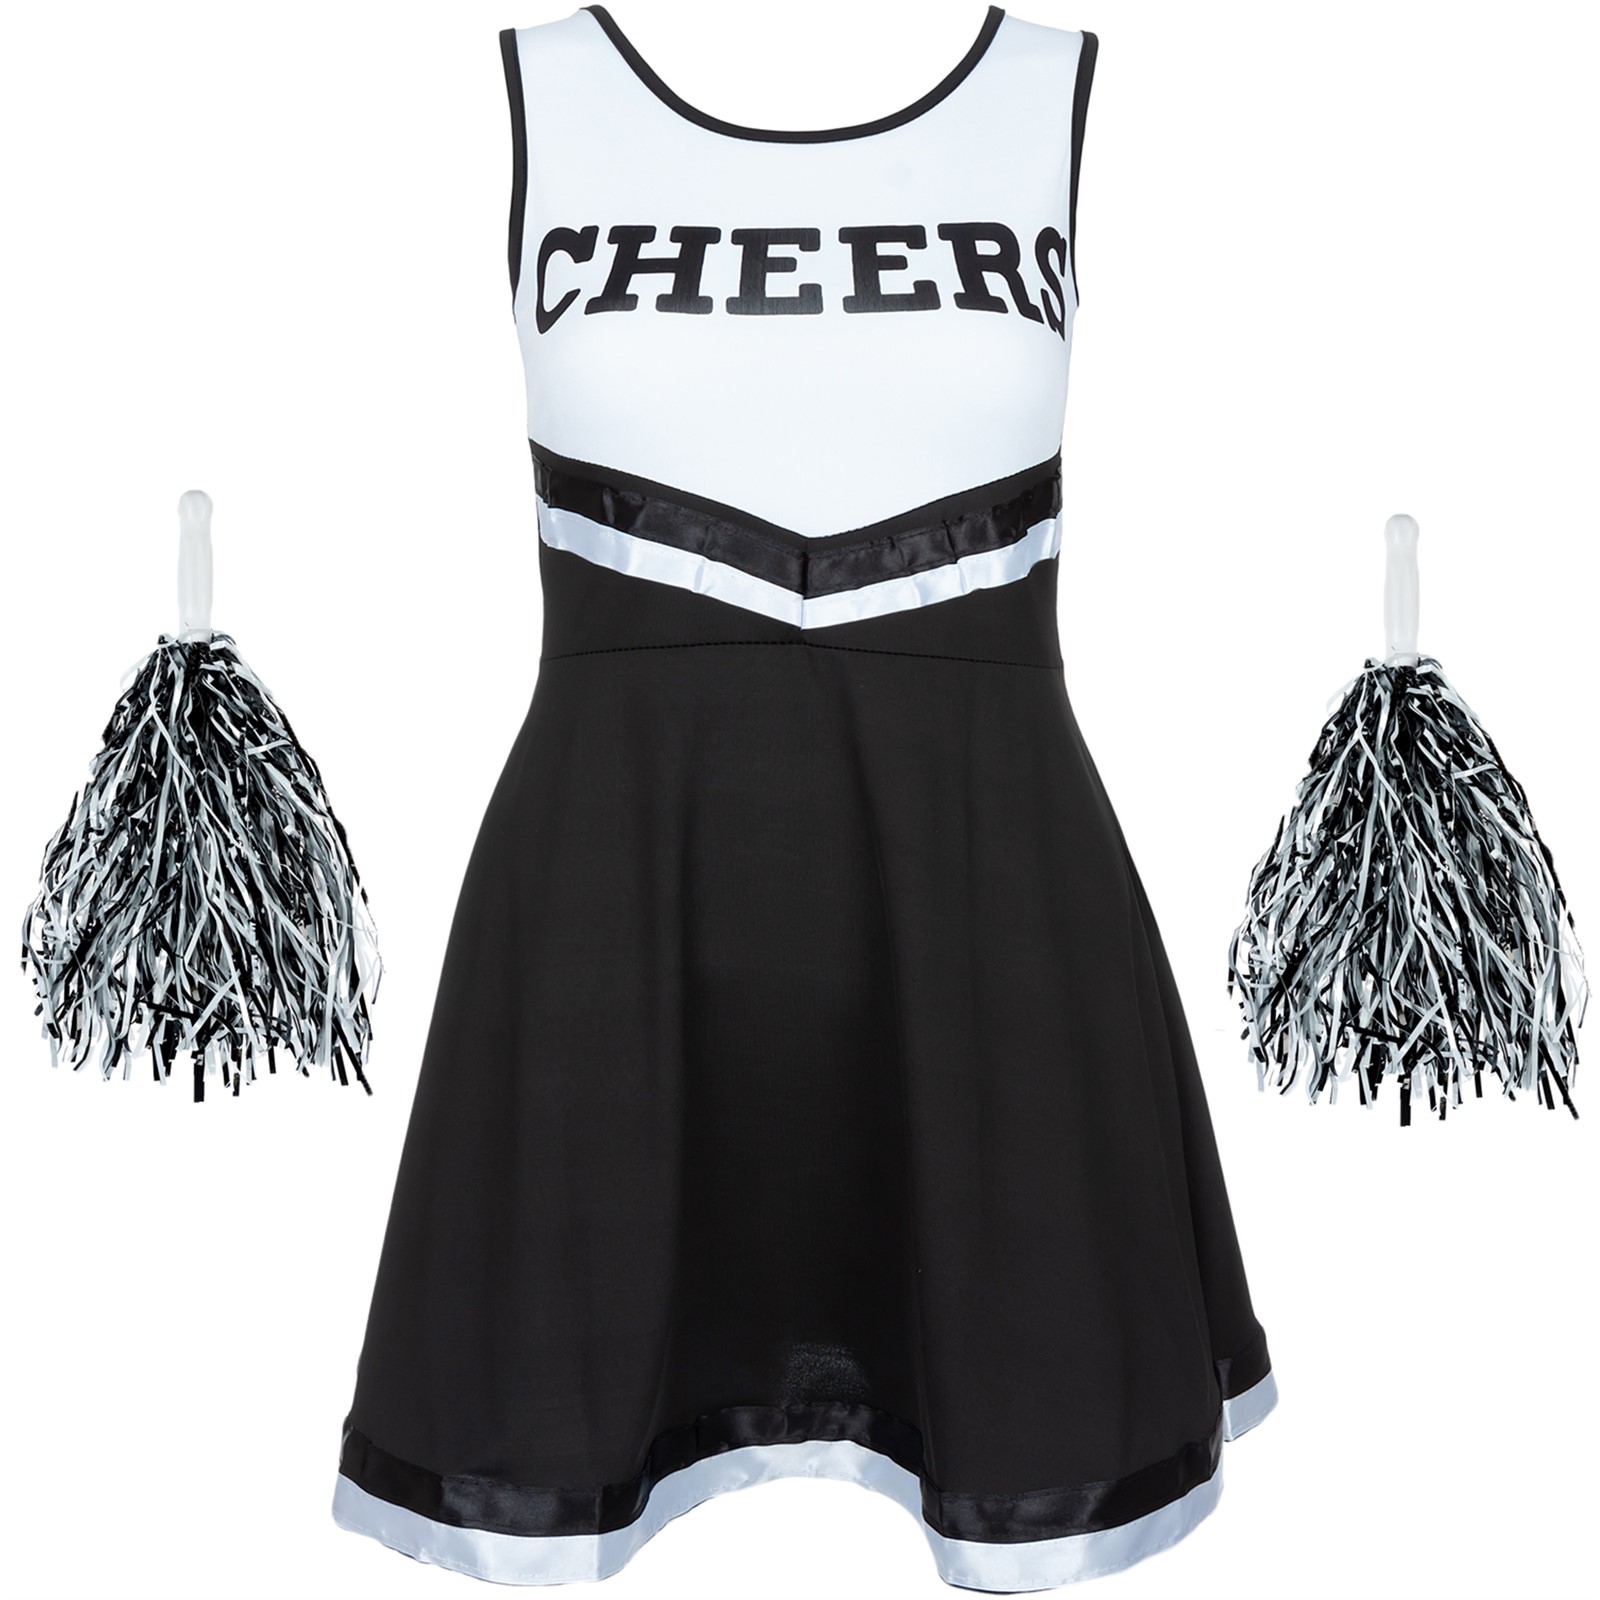 Vestido negro de halloween cheerleader vestido uniforme de la escuela secun...